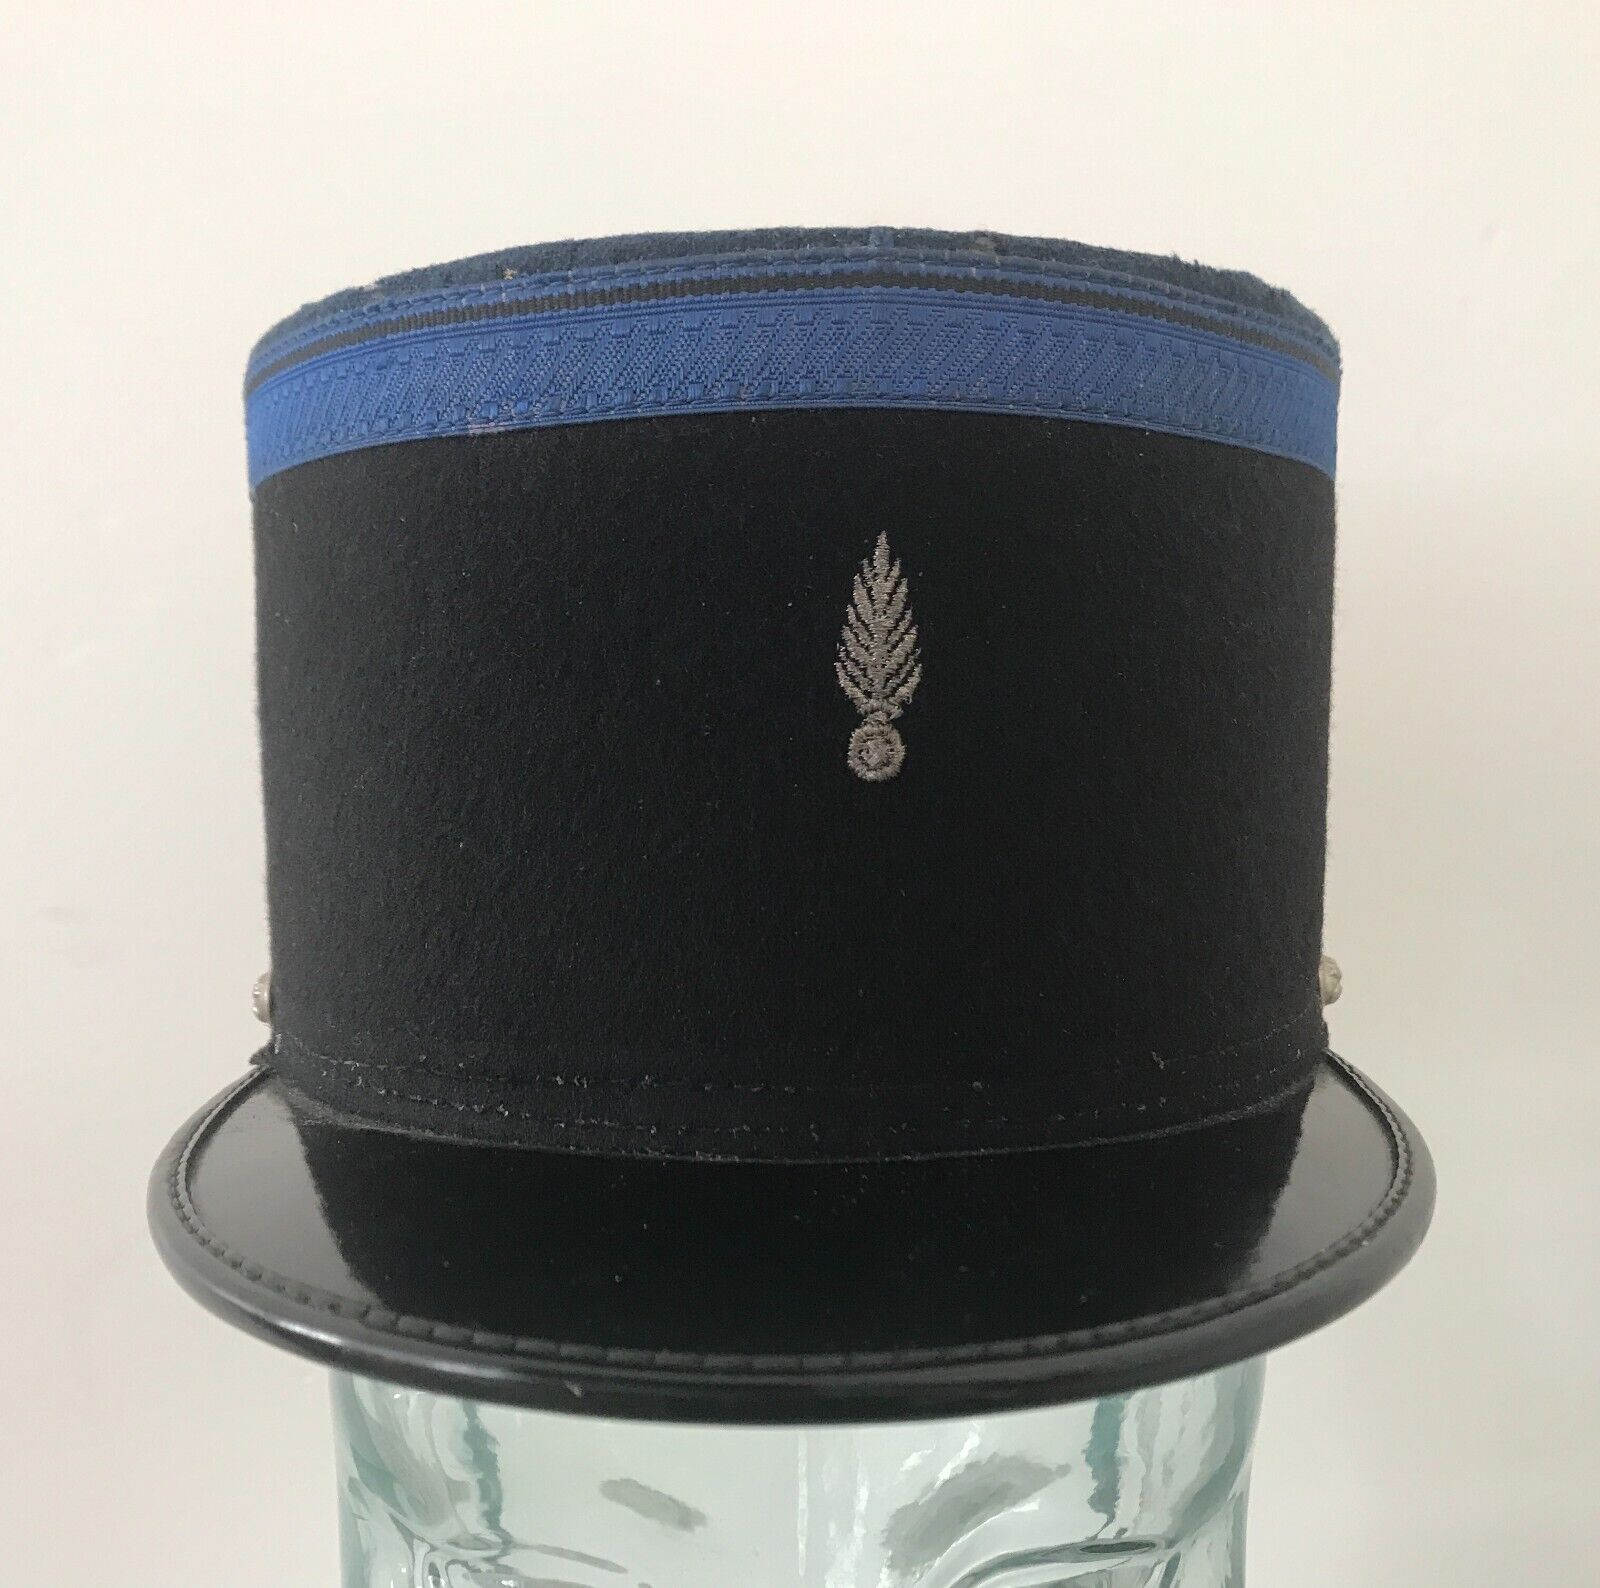 Vintage Original French Gendarme Police Hat Cap Kepi Black and Blue France